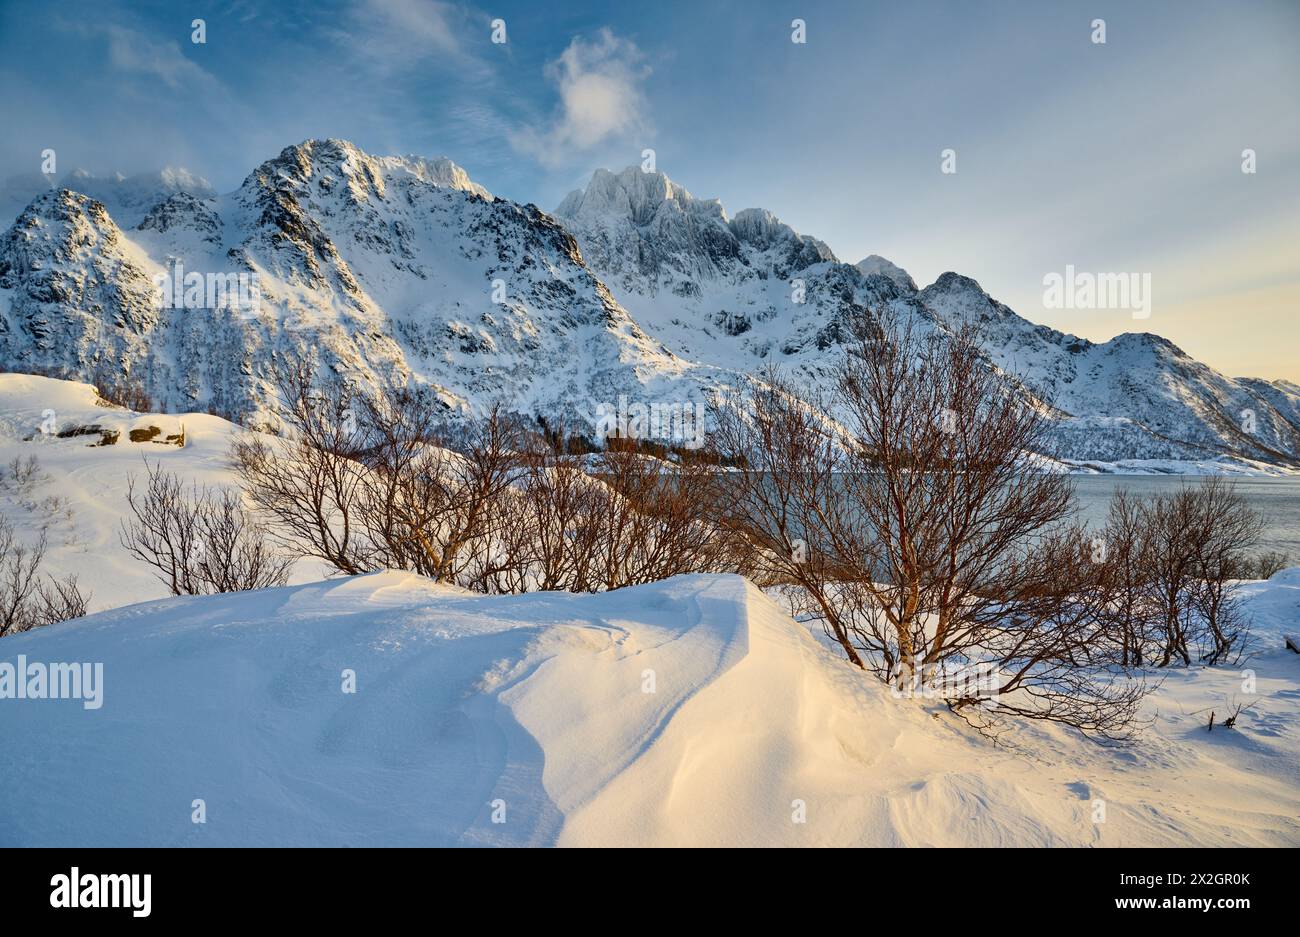 Winterlandschaft mit Bergen und Meer am Aussichtspunkt Austnesfjorden, Støvelhaugen, Lofoten, Norwegen, Europa Stockfoto